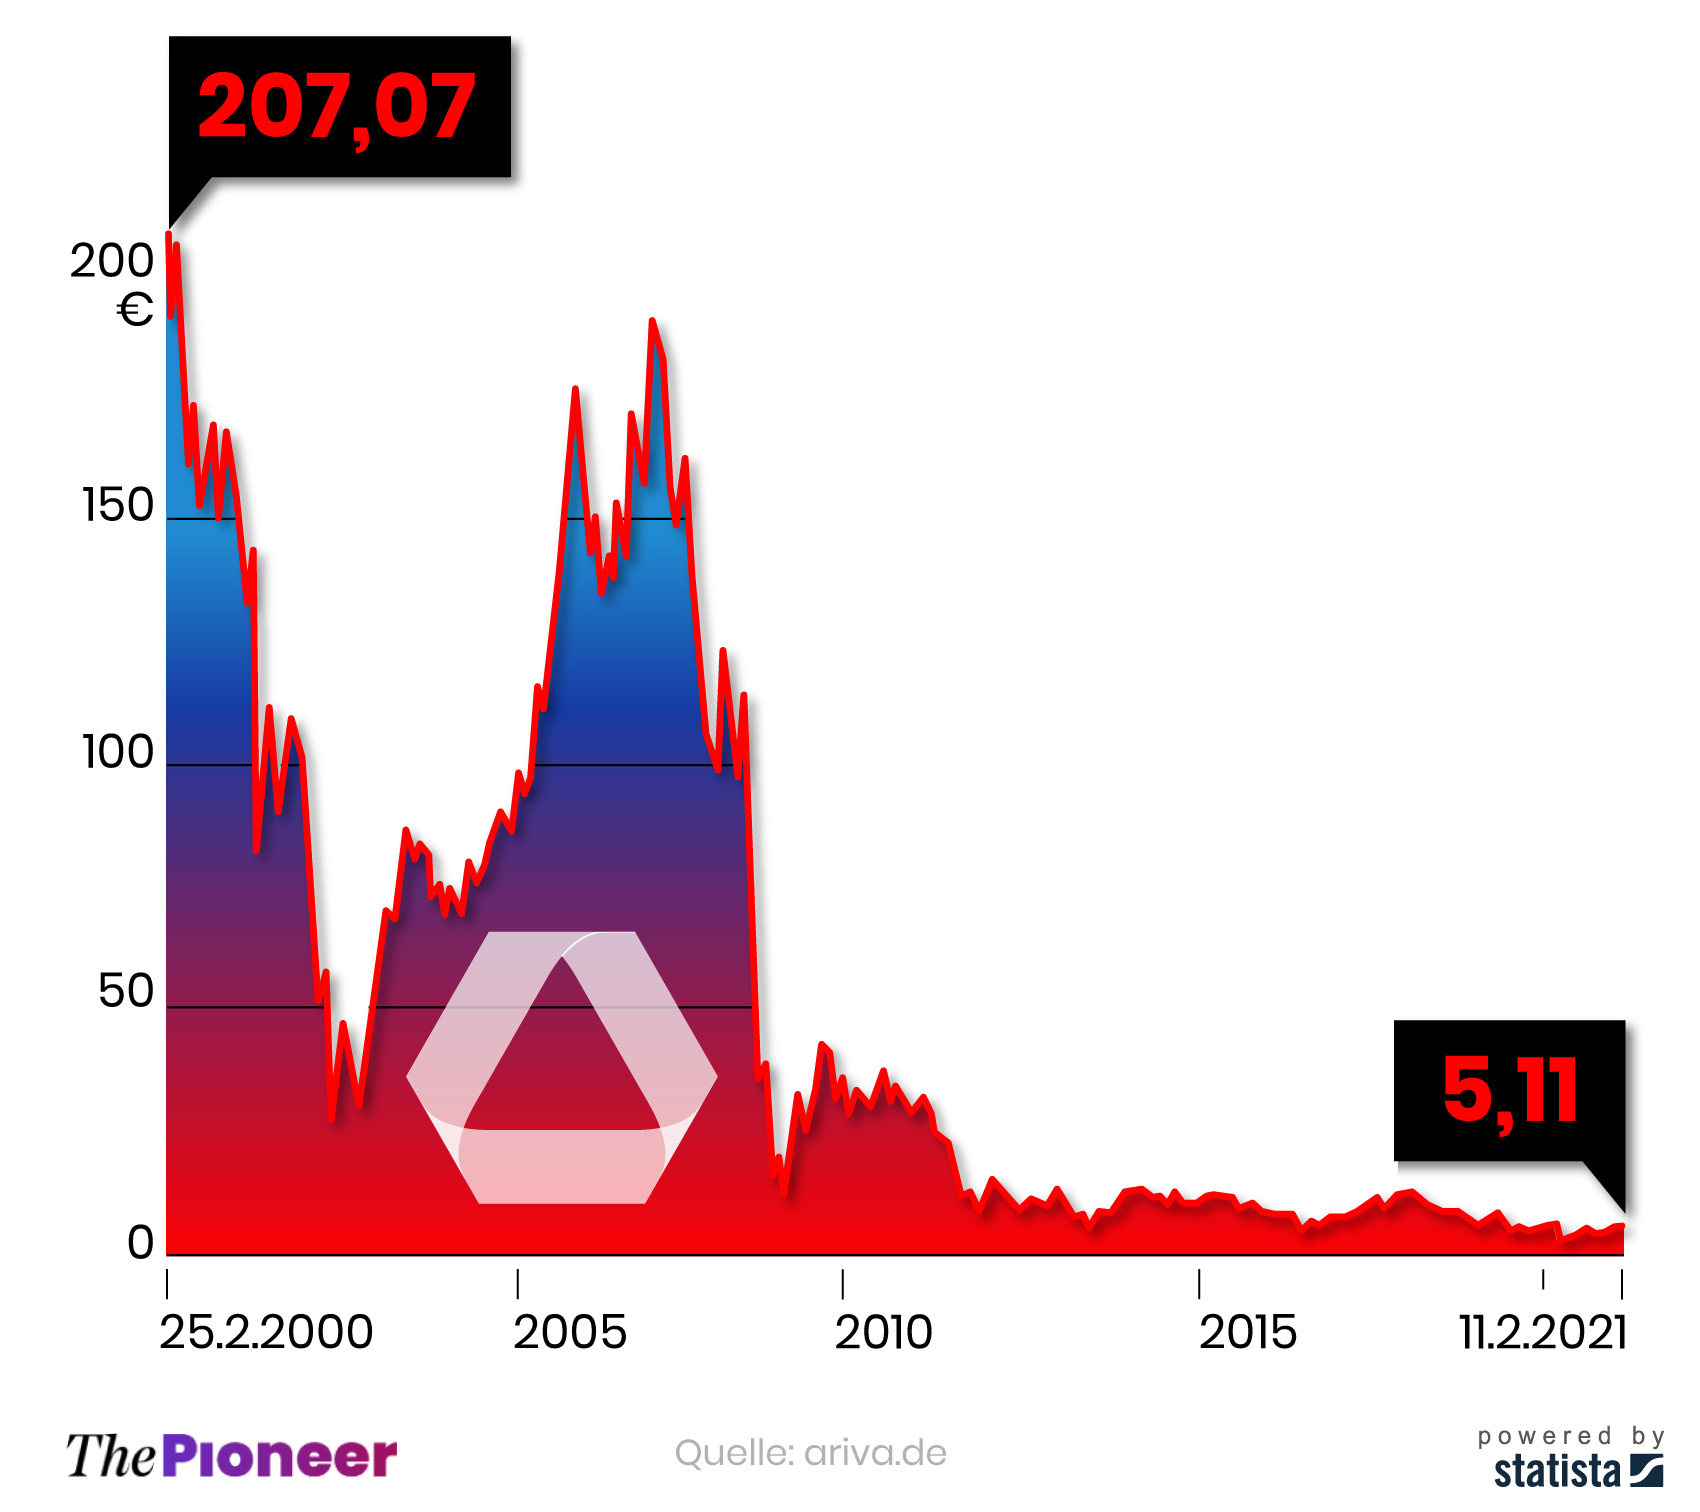 Kursentwicklung der Commerzbank-Aktie seit dem 25. Februar 2000, in Euro